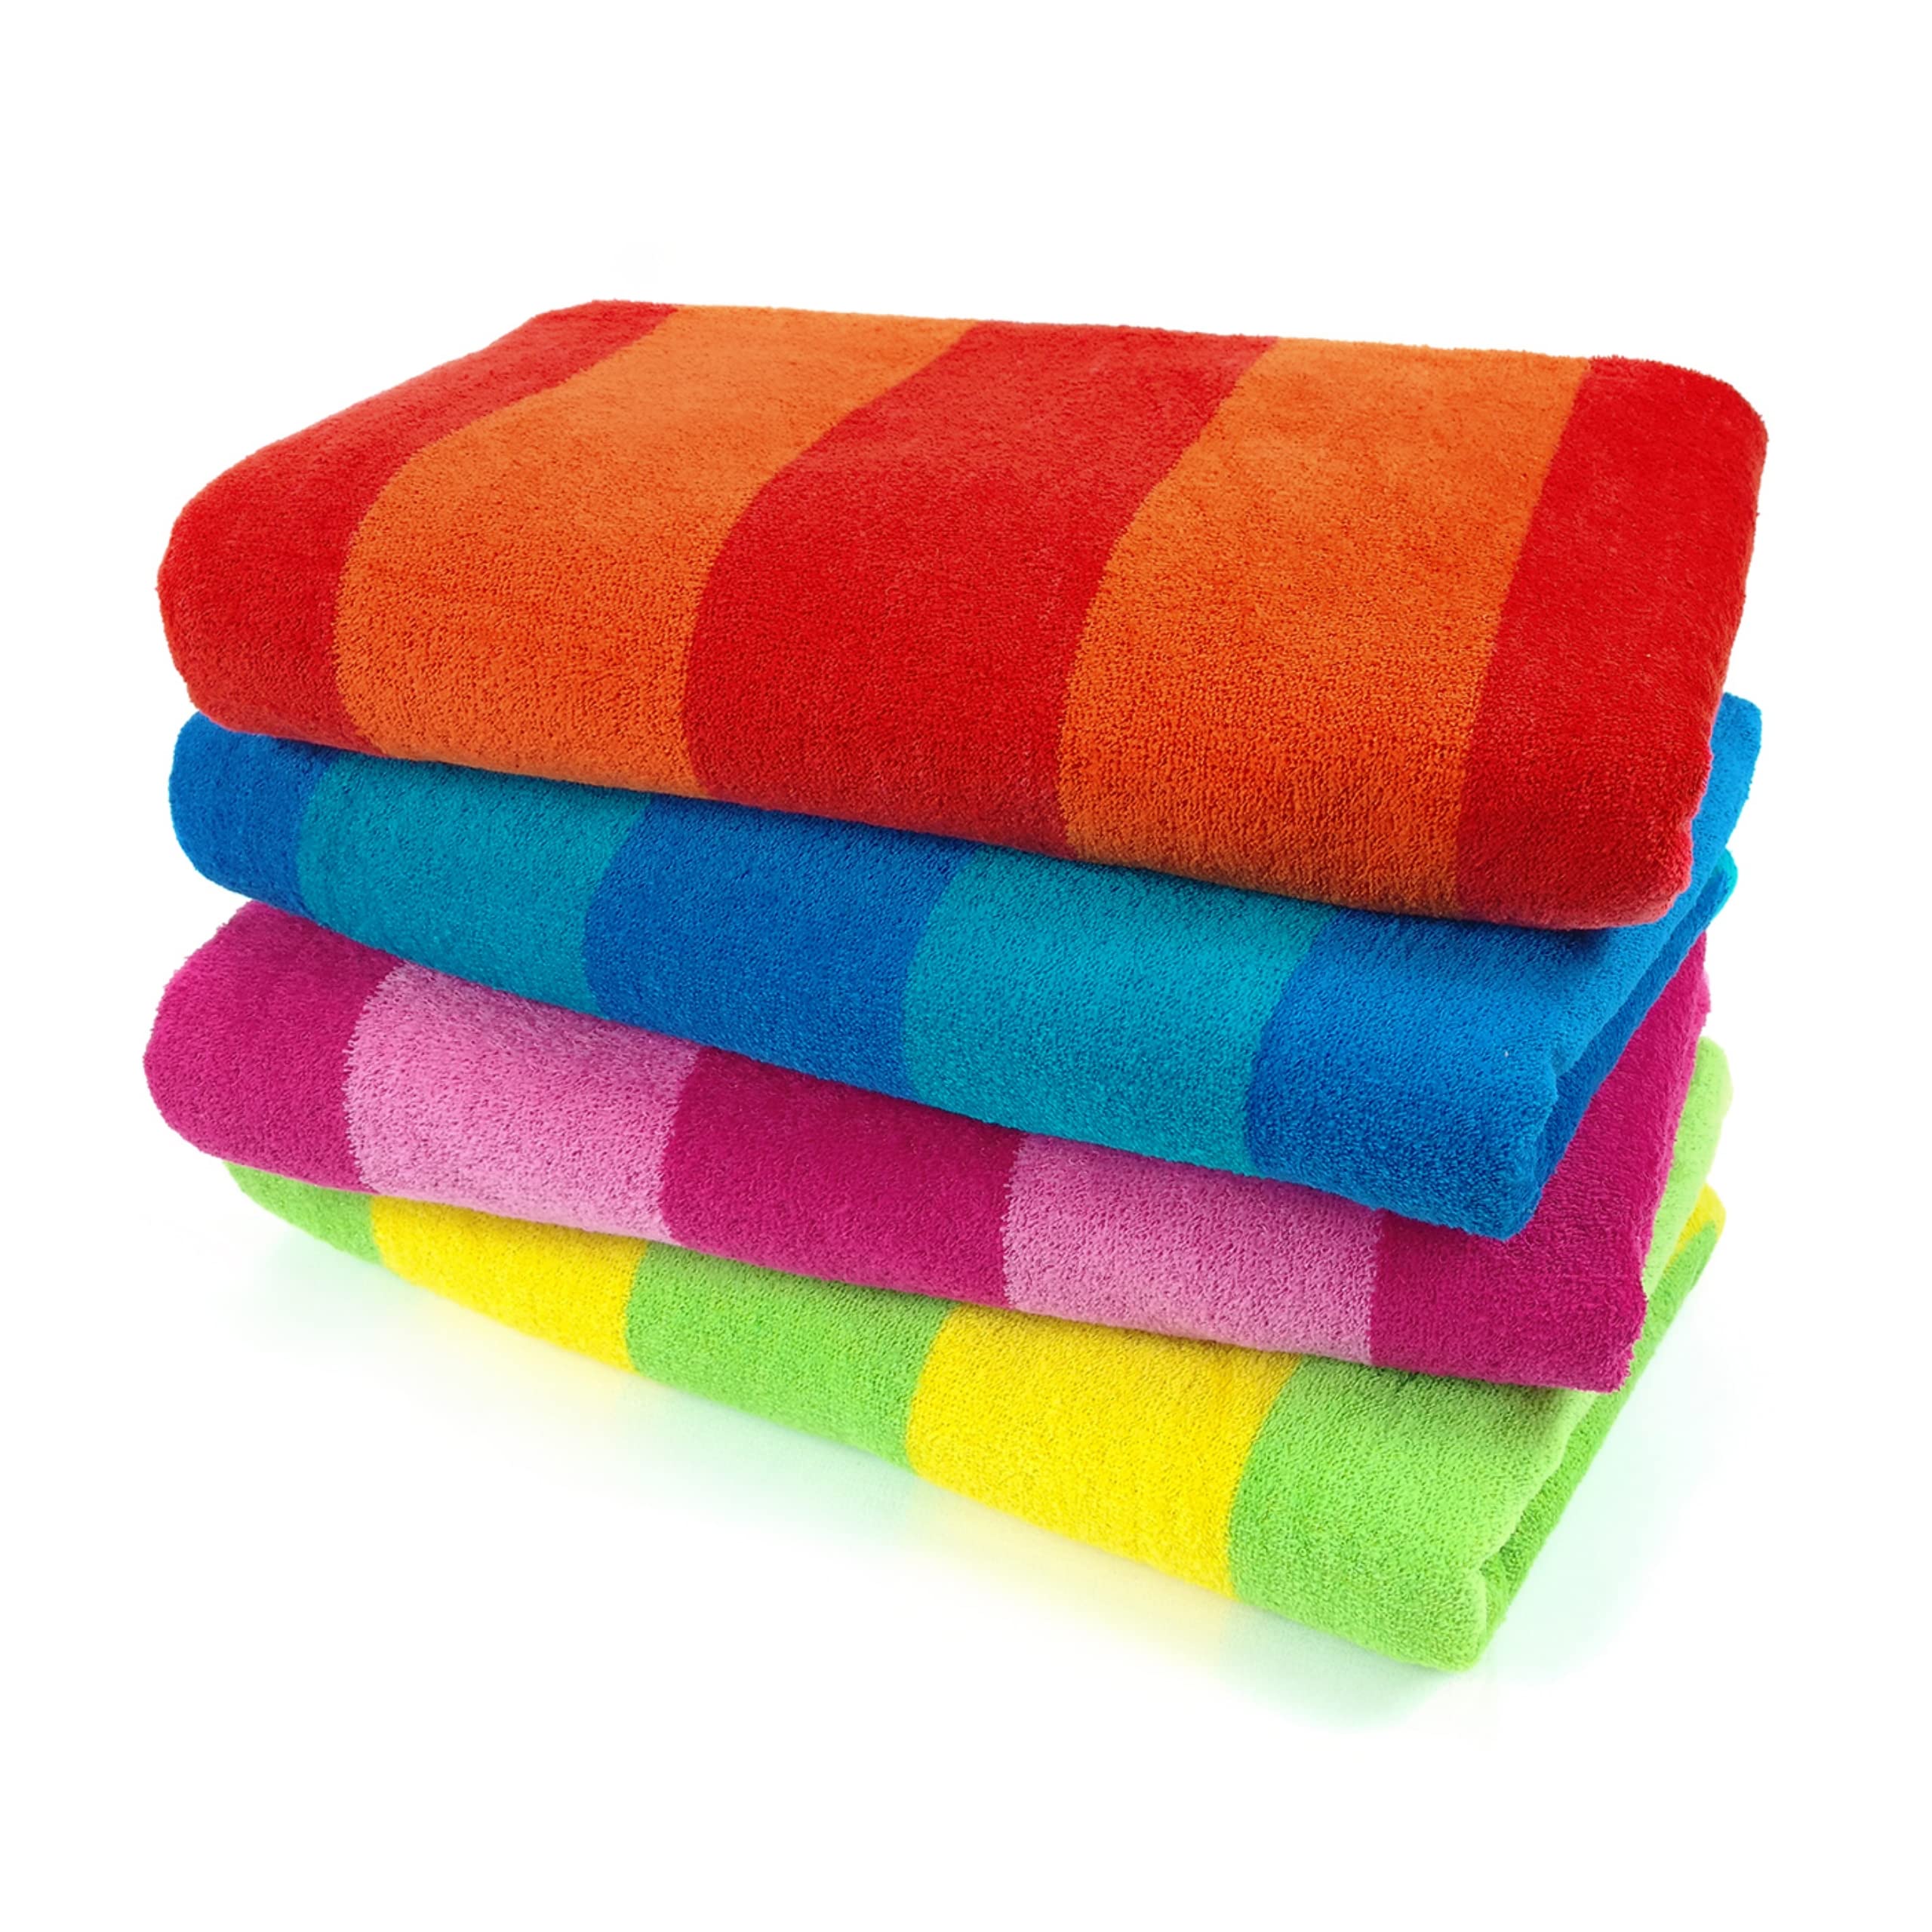 Ben Kaufman 100% Cotton Velour Towels - Large Cotton Towels - Soft